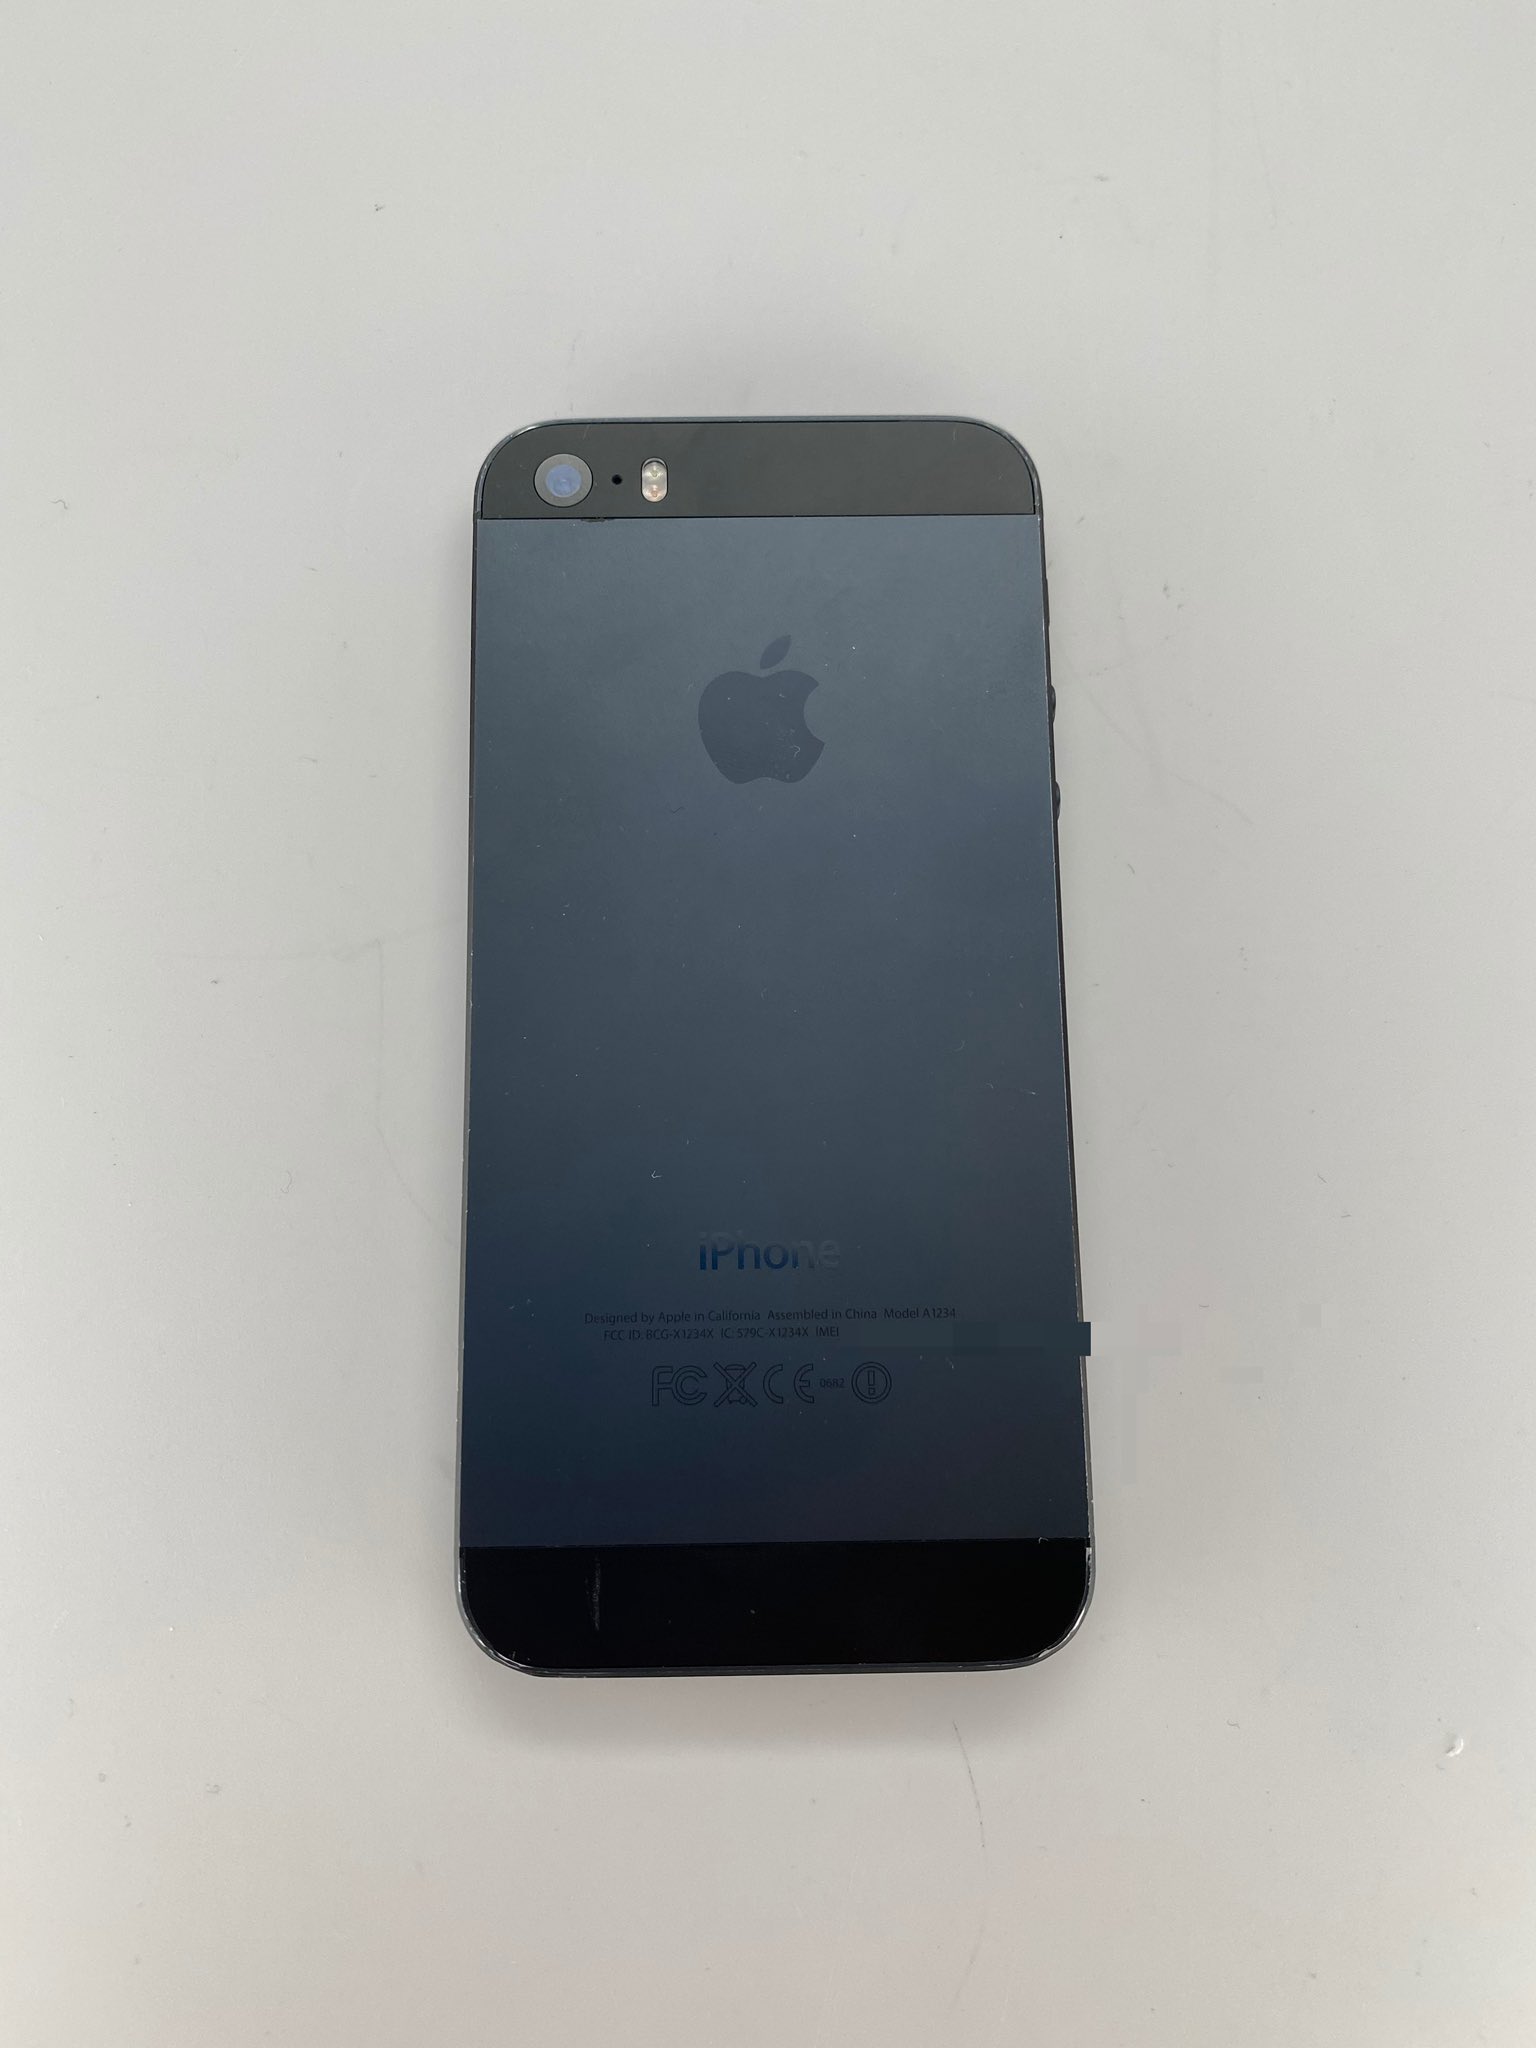 Prototipo de iPhone 5S en color negro